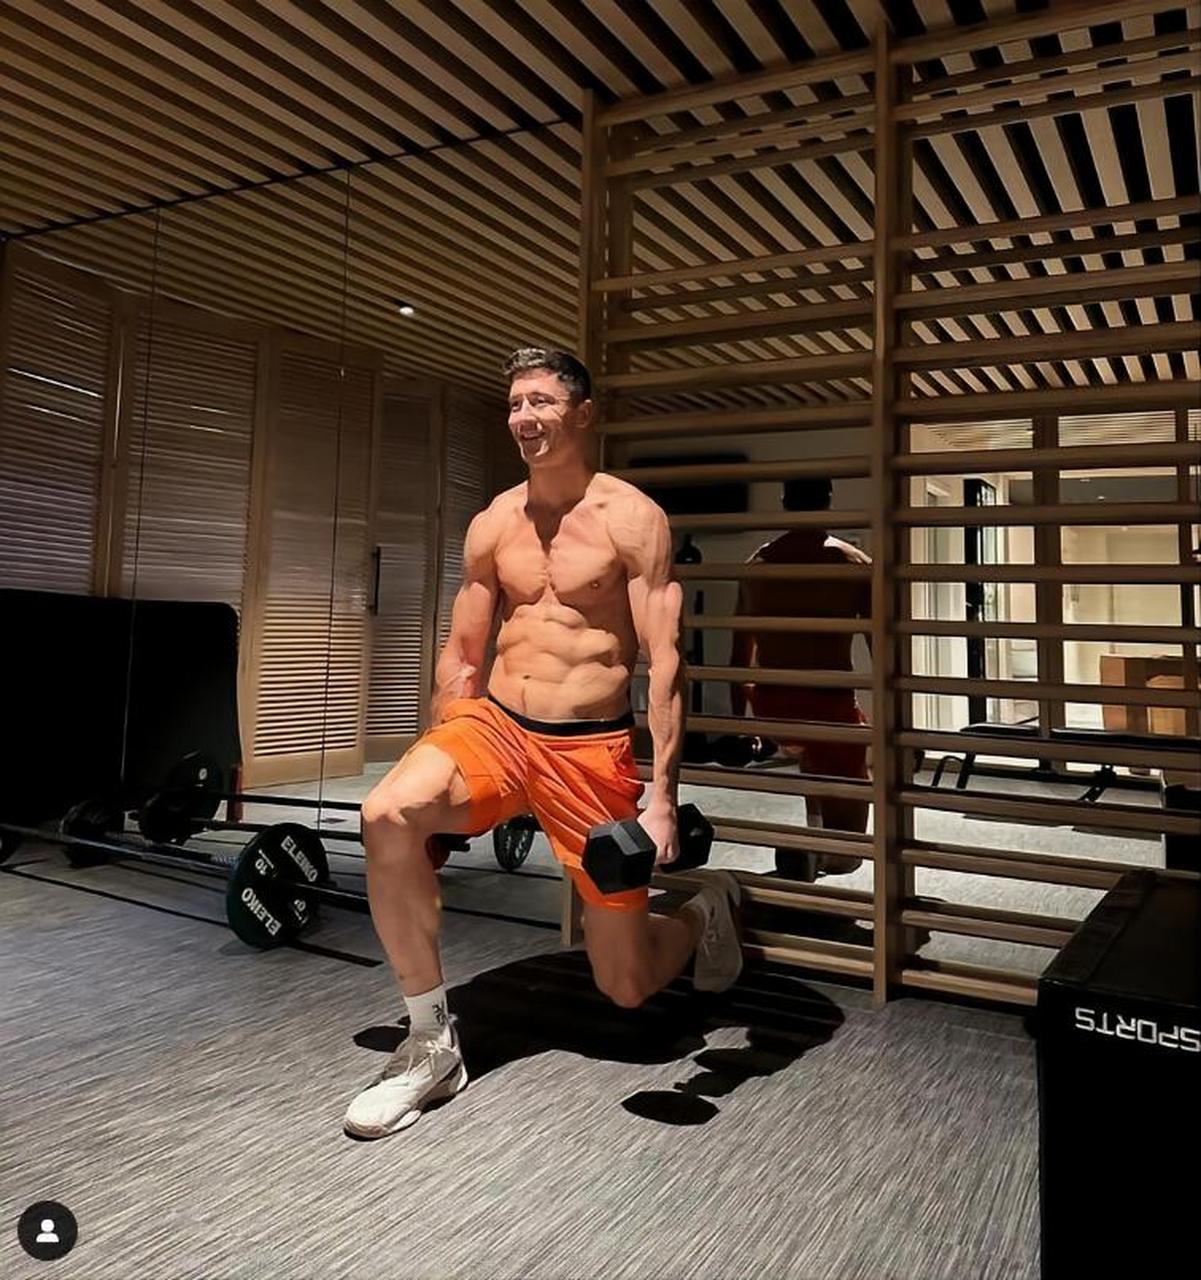 完美身材,莱万秀肌肉:在健身房的早晨 巴塞罗那中锋莱万有着令人羡慕